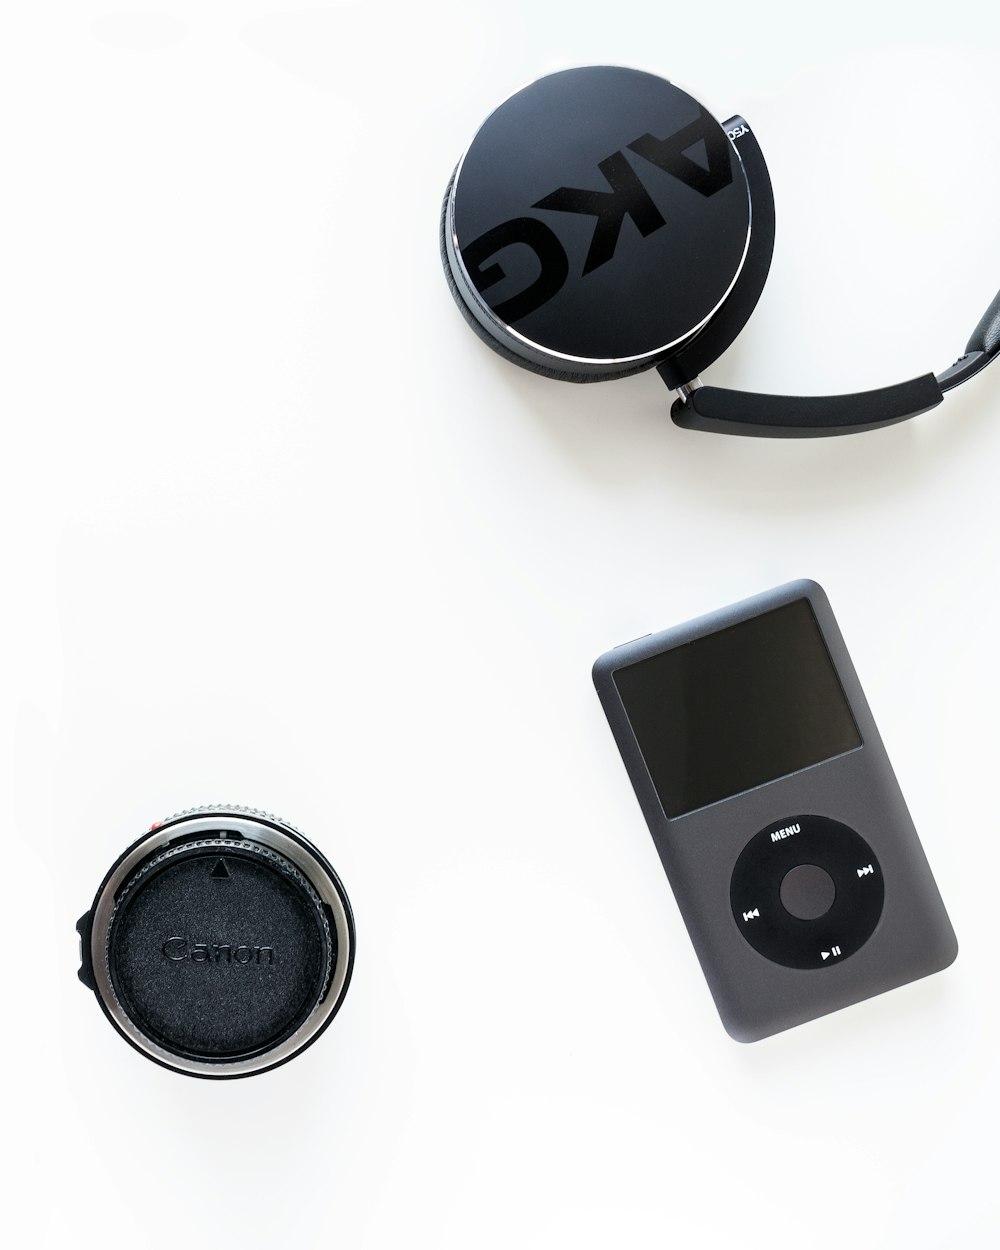 iPod classique noir à côté de l’objectif noir de l’appareil photo Canon